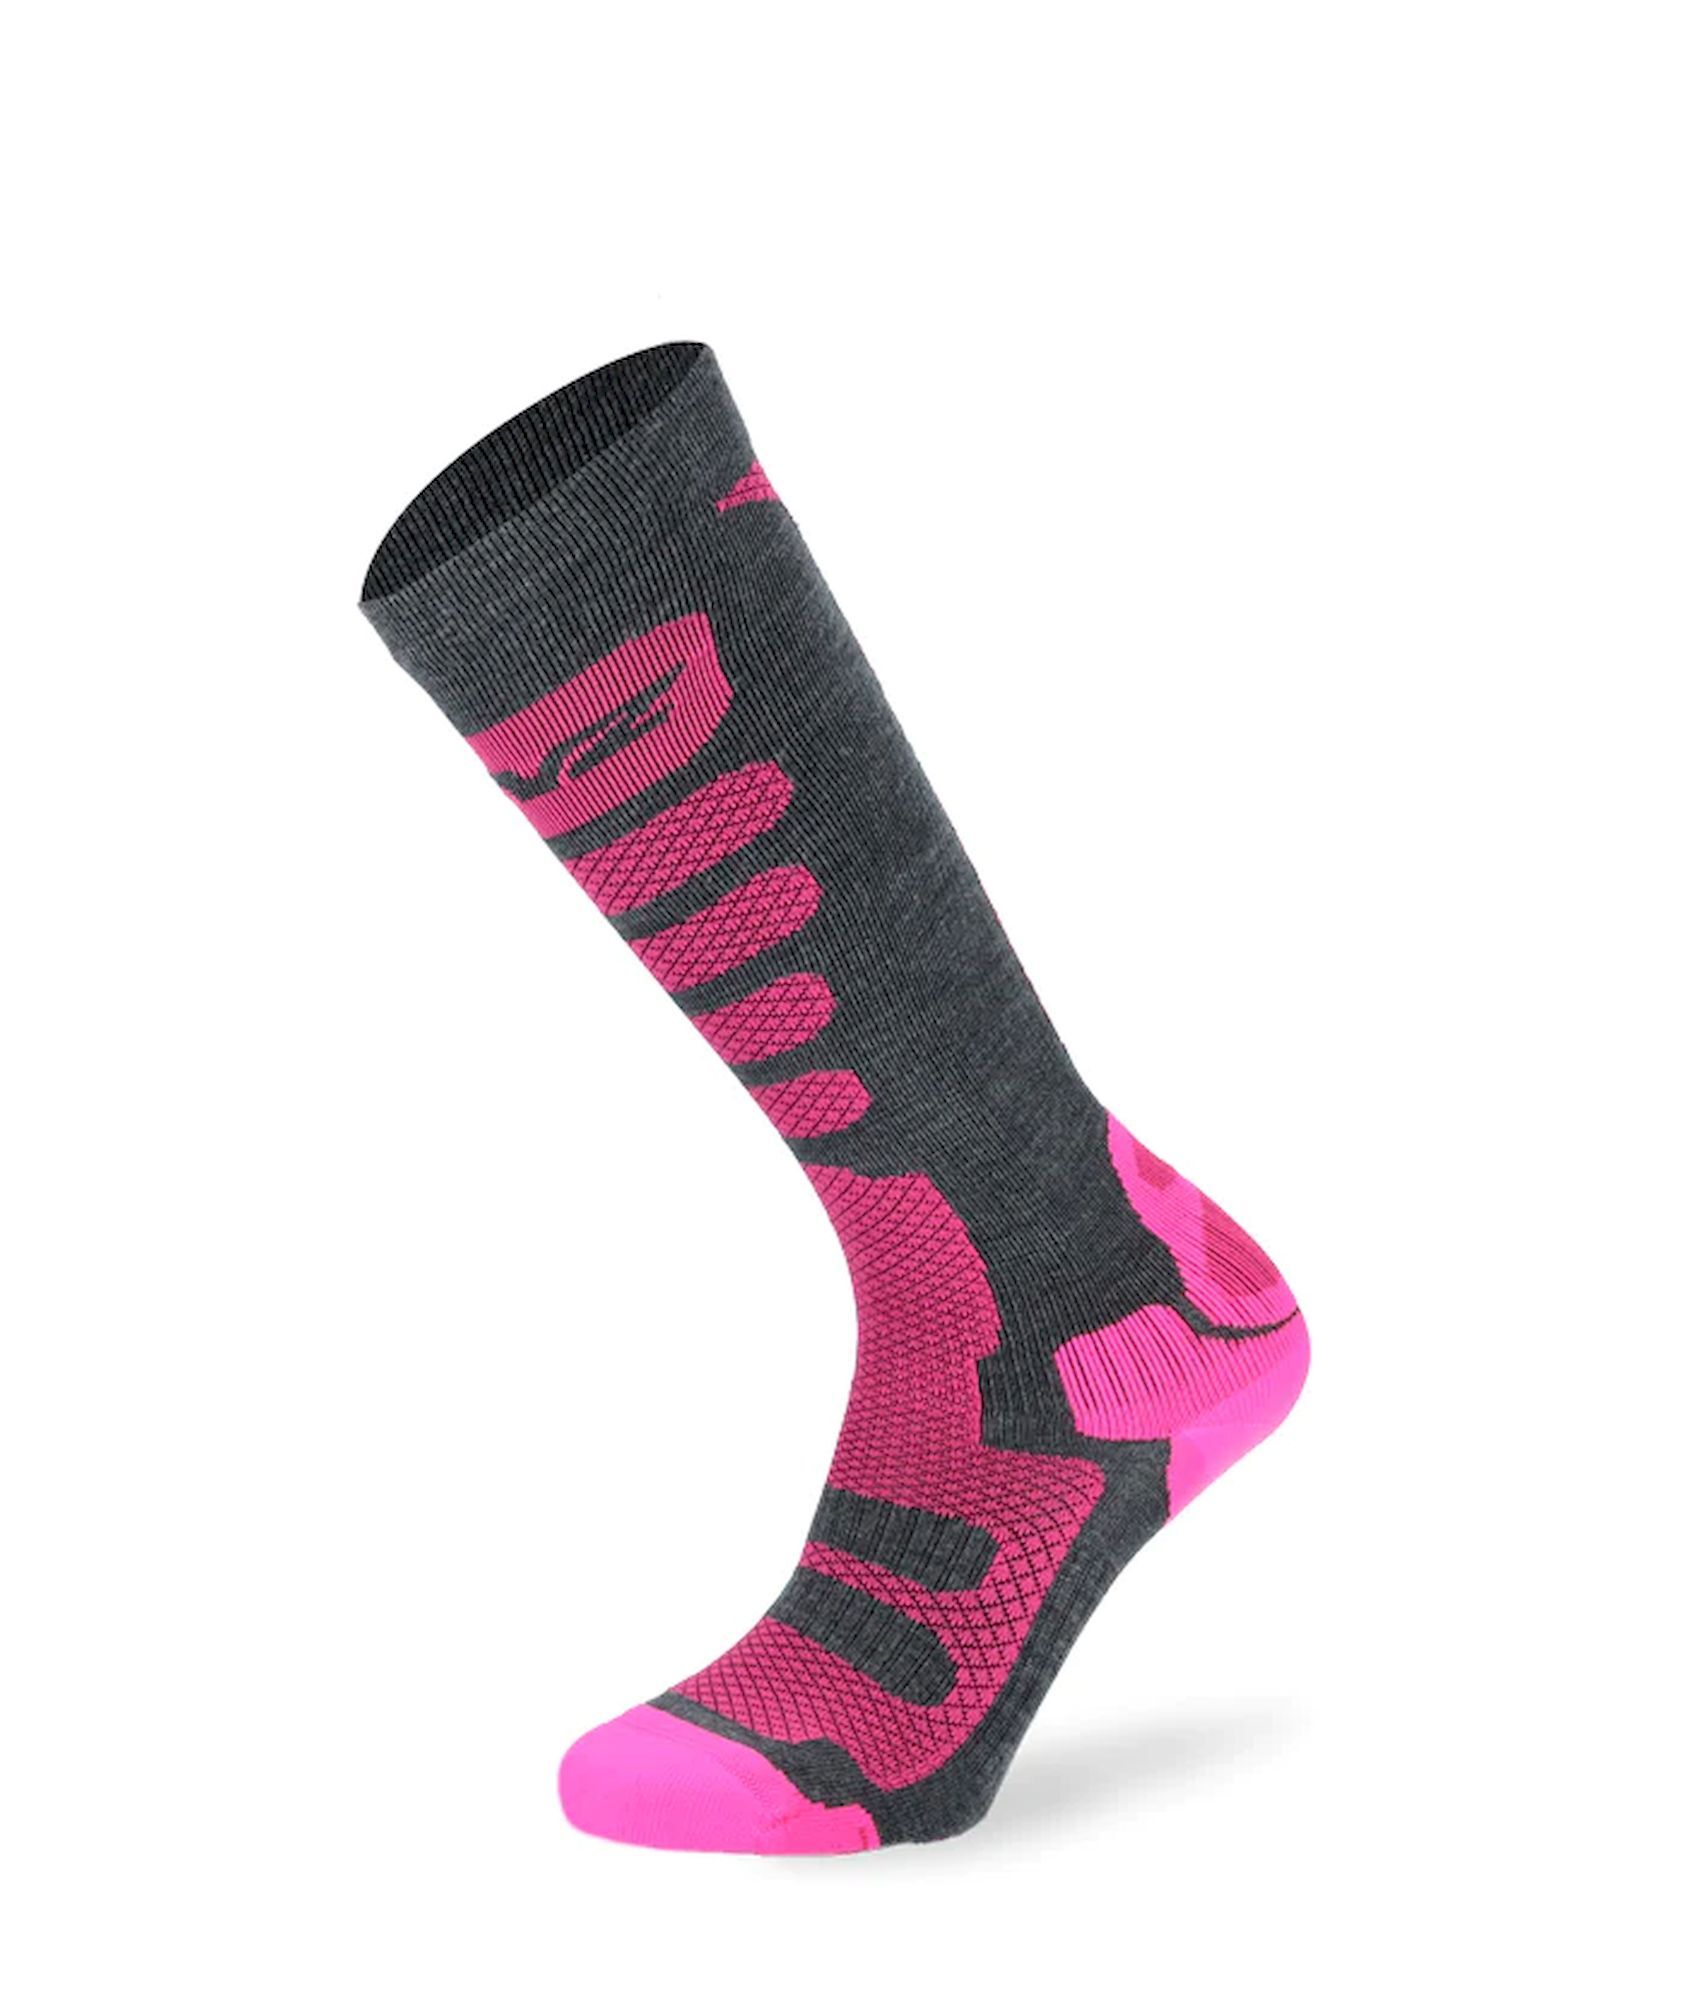 Lenz Free Tour 1.0 - Ski socks - Women's | Hardloop